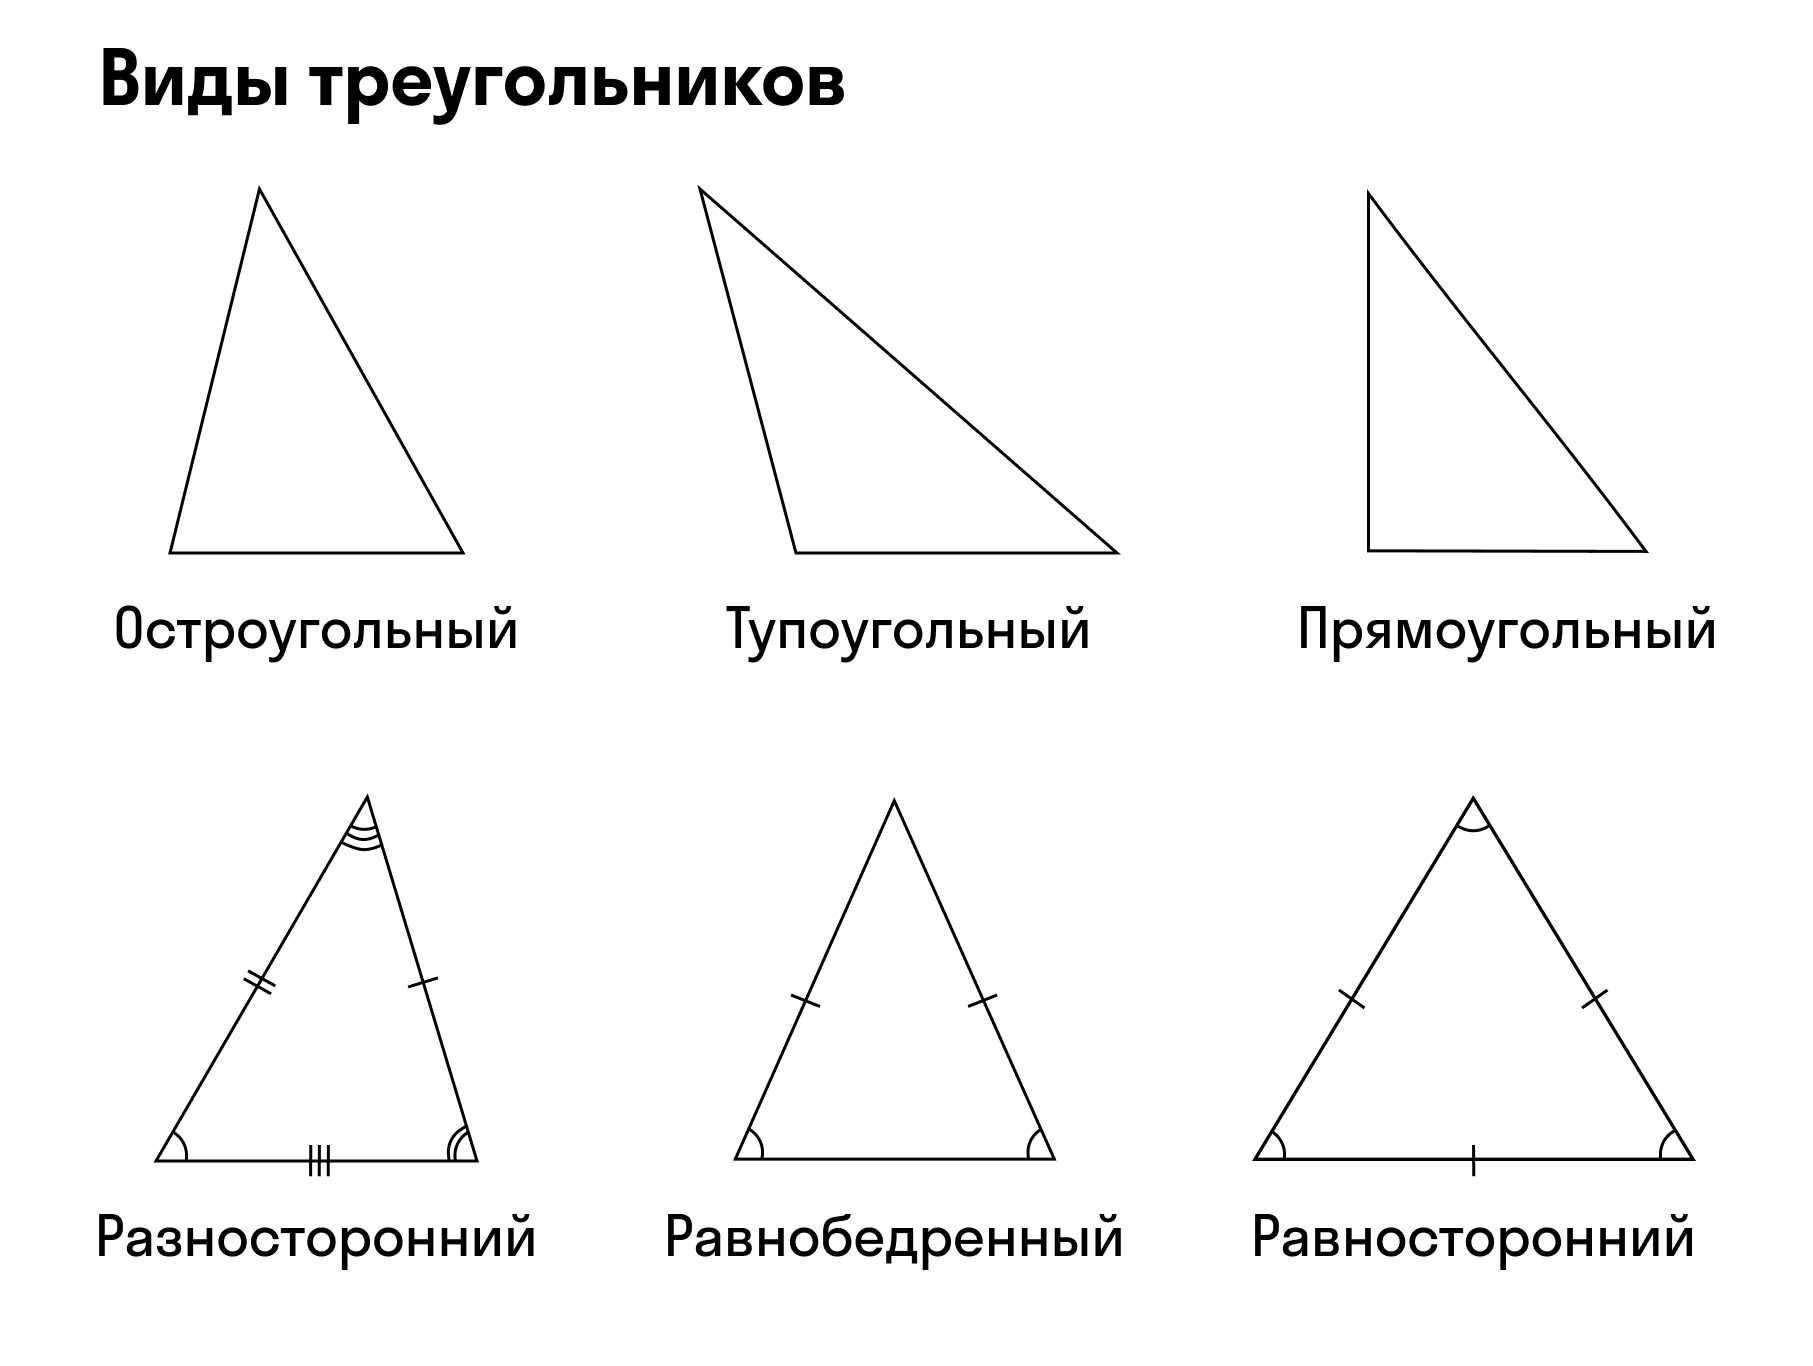 Равнобедренный равносторонний и прямоугольный треугольник. Остроугольный прямоугольный и тупоугольный треугольники. Острый треугольник. Треугольники виды треугольников. Построй прямоугольный и тупоугольный треугольник